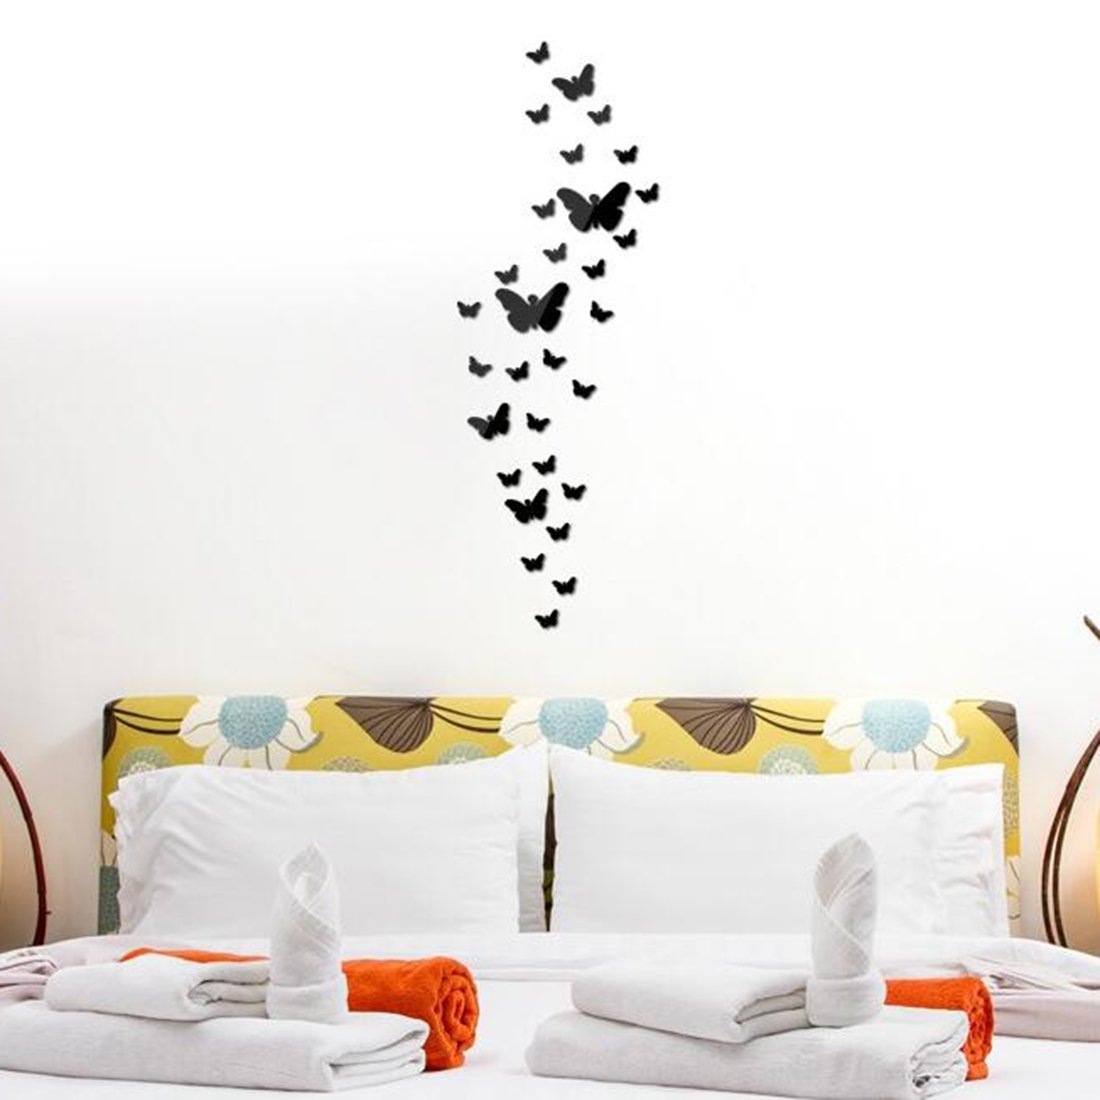 Бабочки из виниловой пленки над кроватью